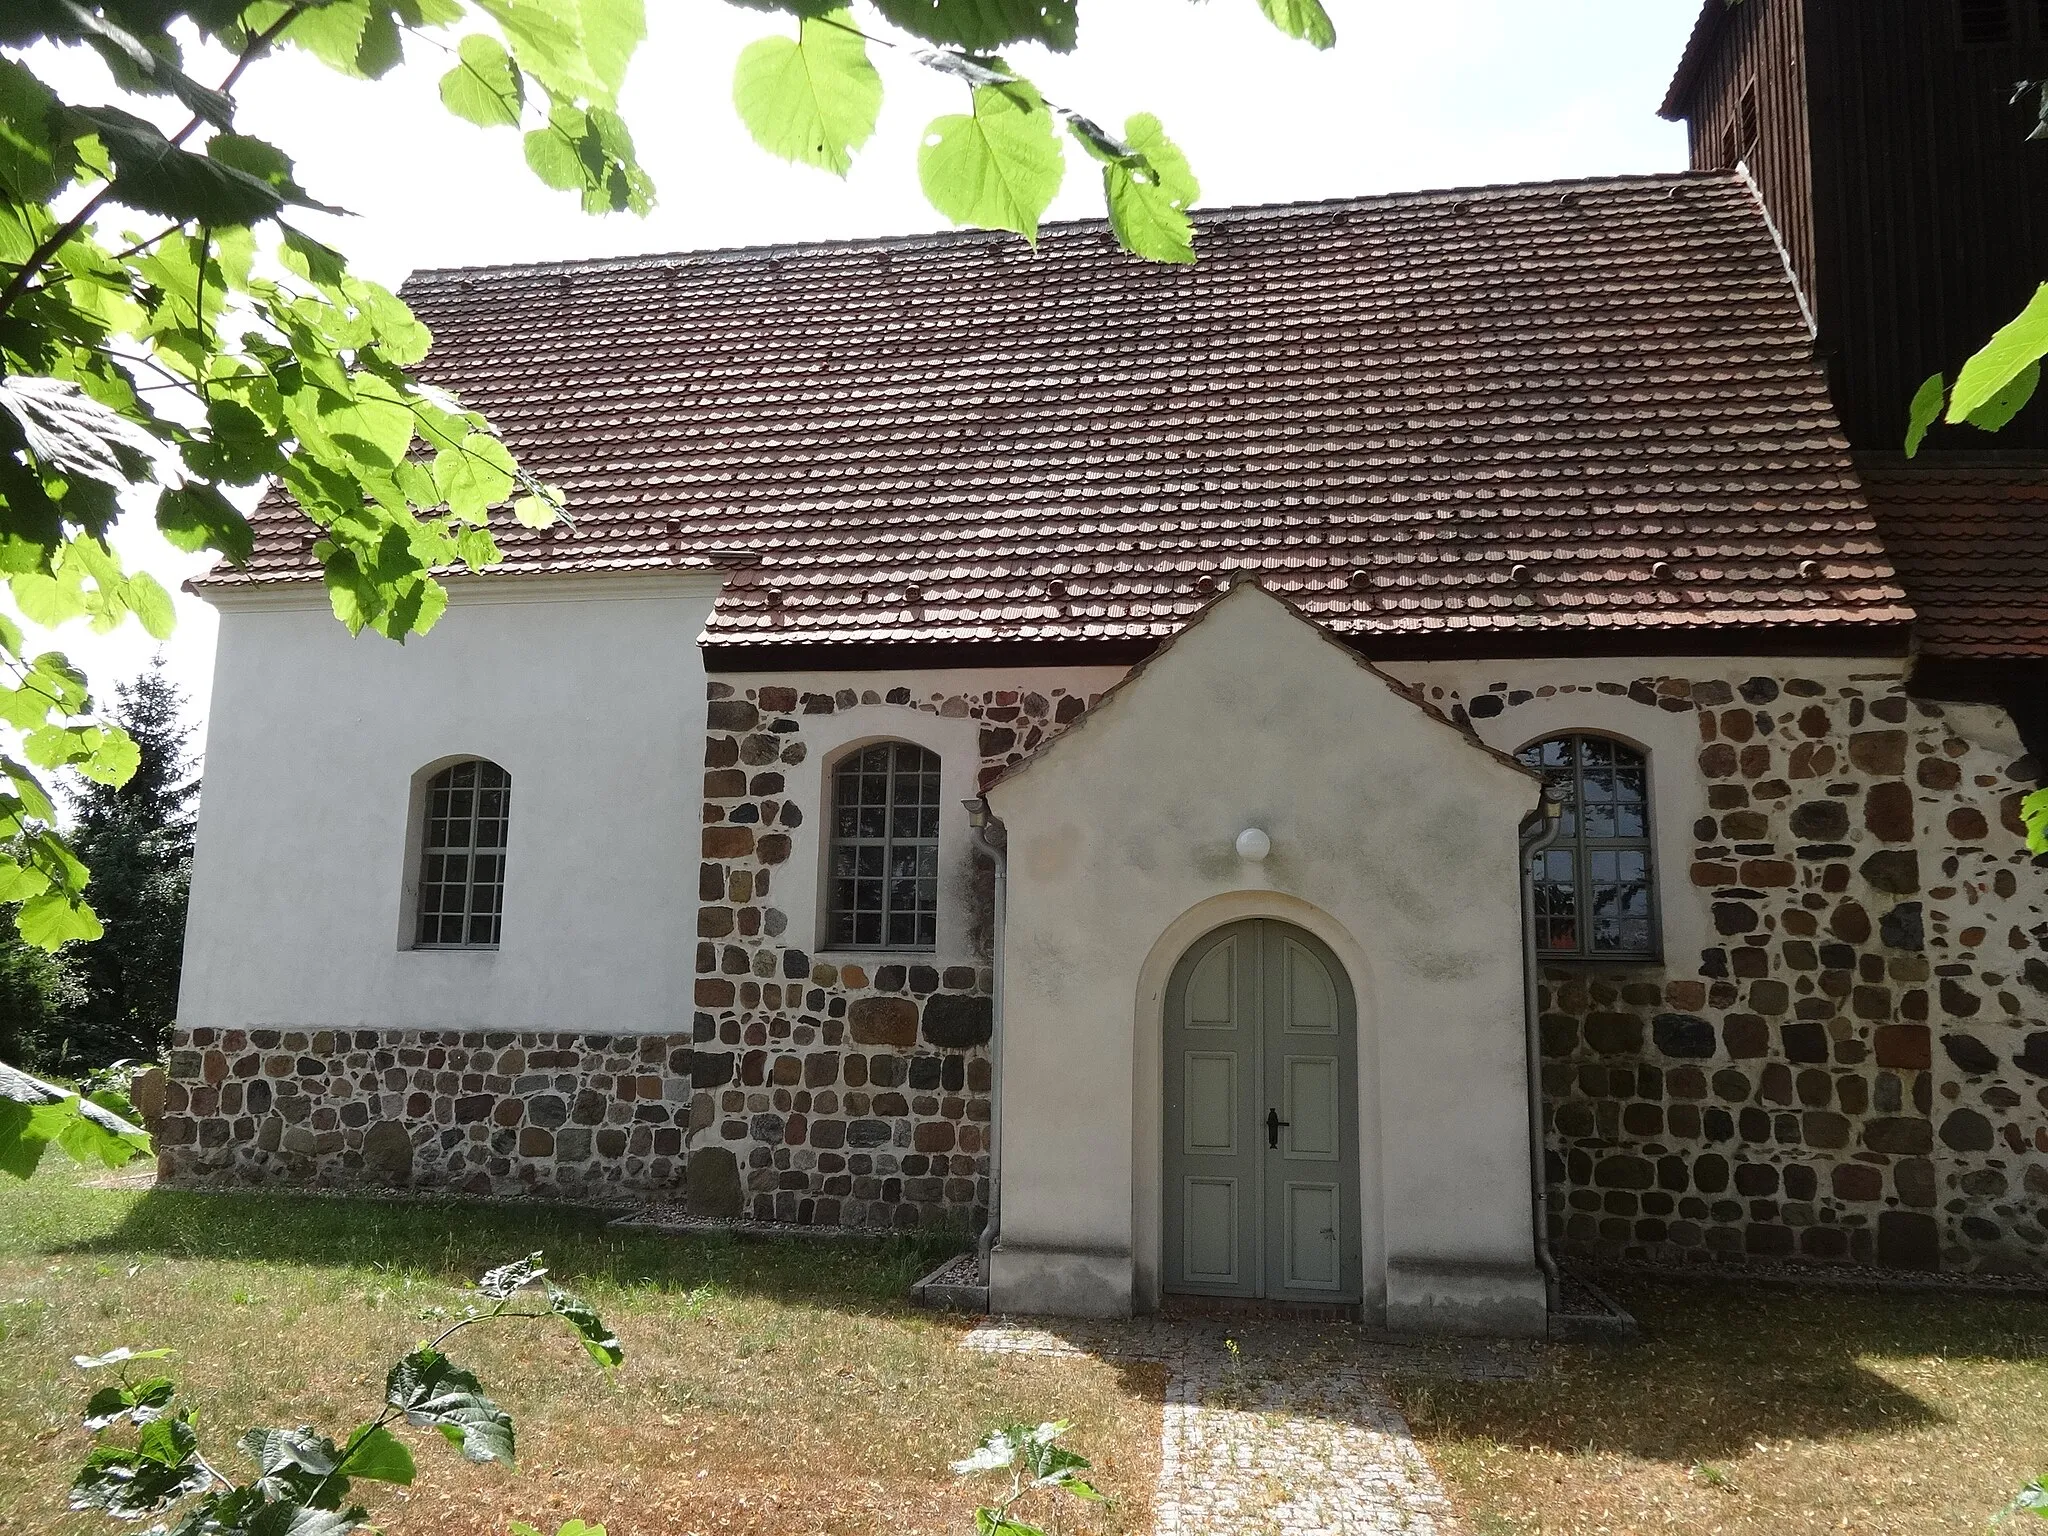 Photo showing: Die Dorfkirche in Schönefeld ist eine Feldsteinkirche aus dem 13. Jahrhundert in Beelitz im Landkreis Potsdam-Mittelmark in Brandenburg. Sie wurde barock überformt und um einen Westturm ergänzt. Im Innern befinden sich ein Kanzelaltar aus dem Jahr 1715 sowie Reste mittelalterlicher Wandmalereien.